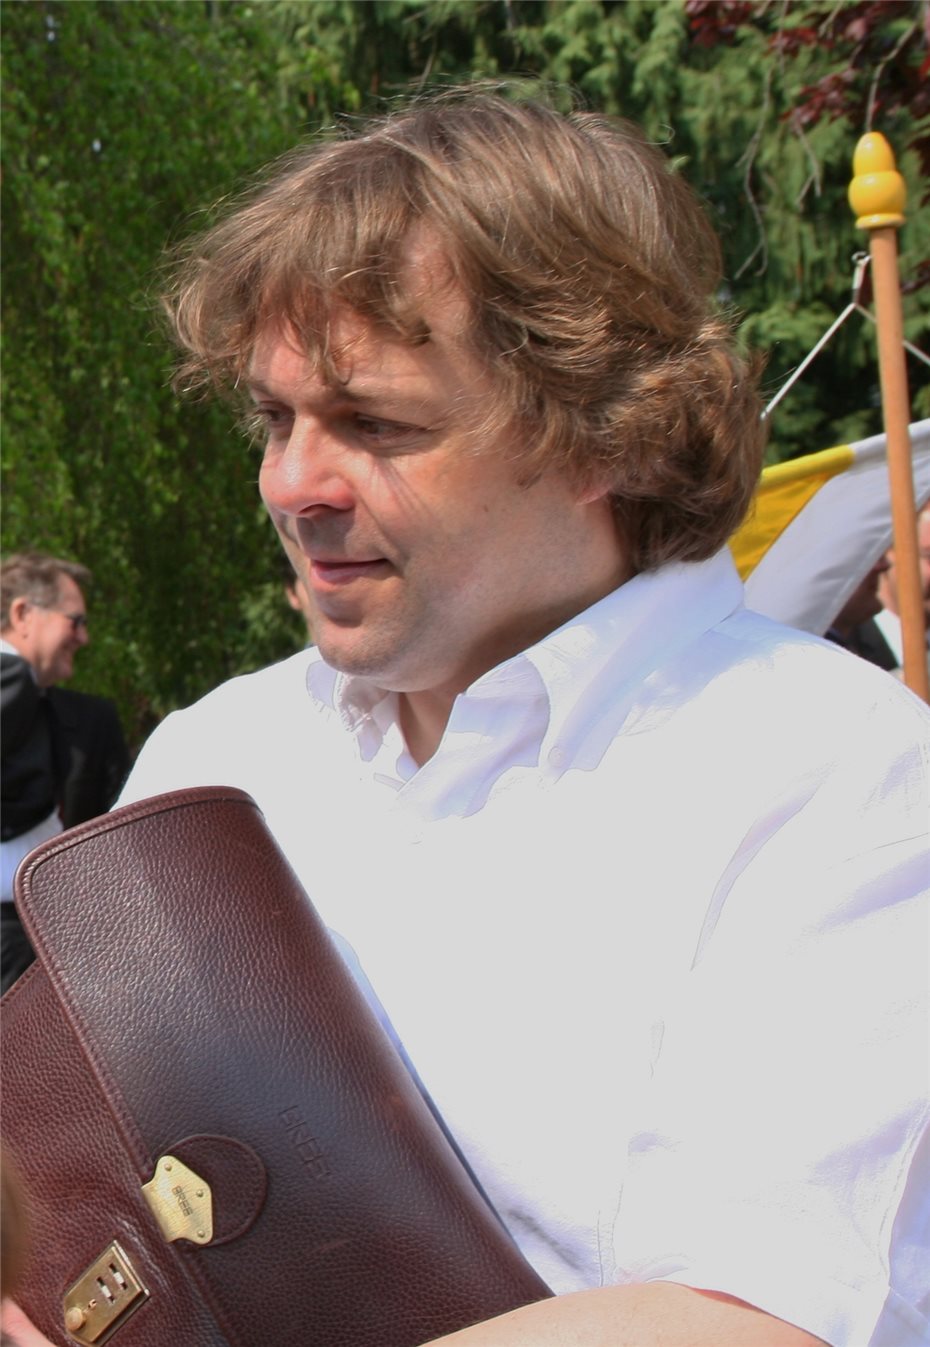 Chorleiter Benedikt Haentjes
hinterlässt klaffende Lücke in Wachtberg